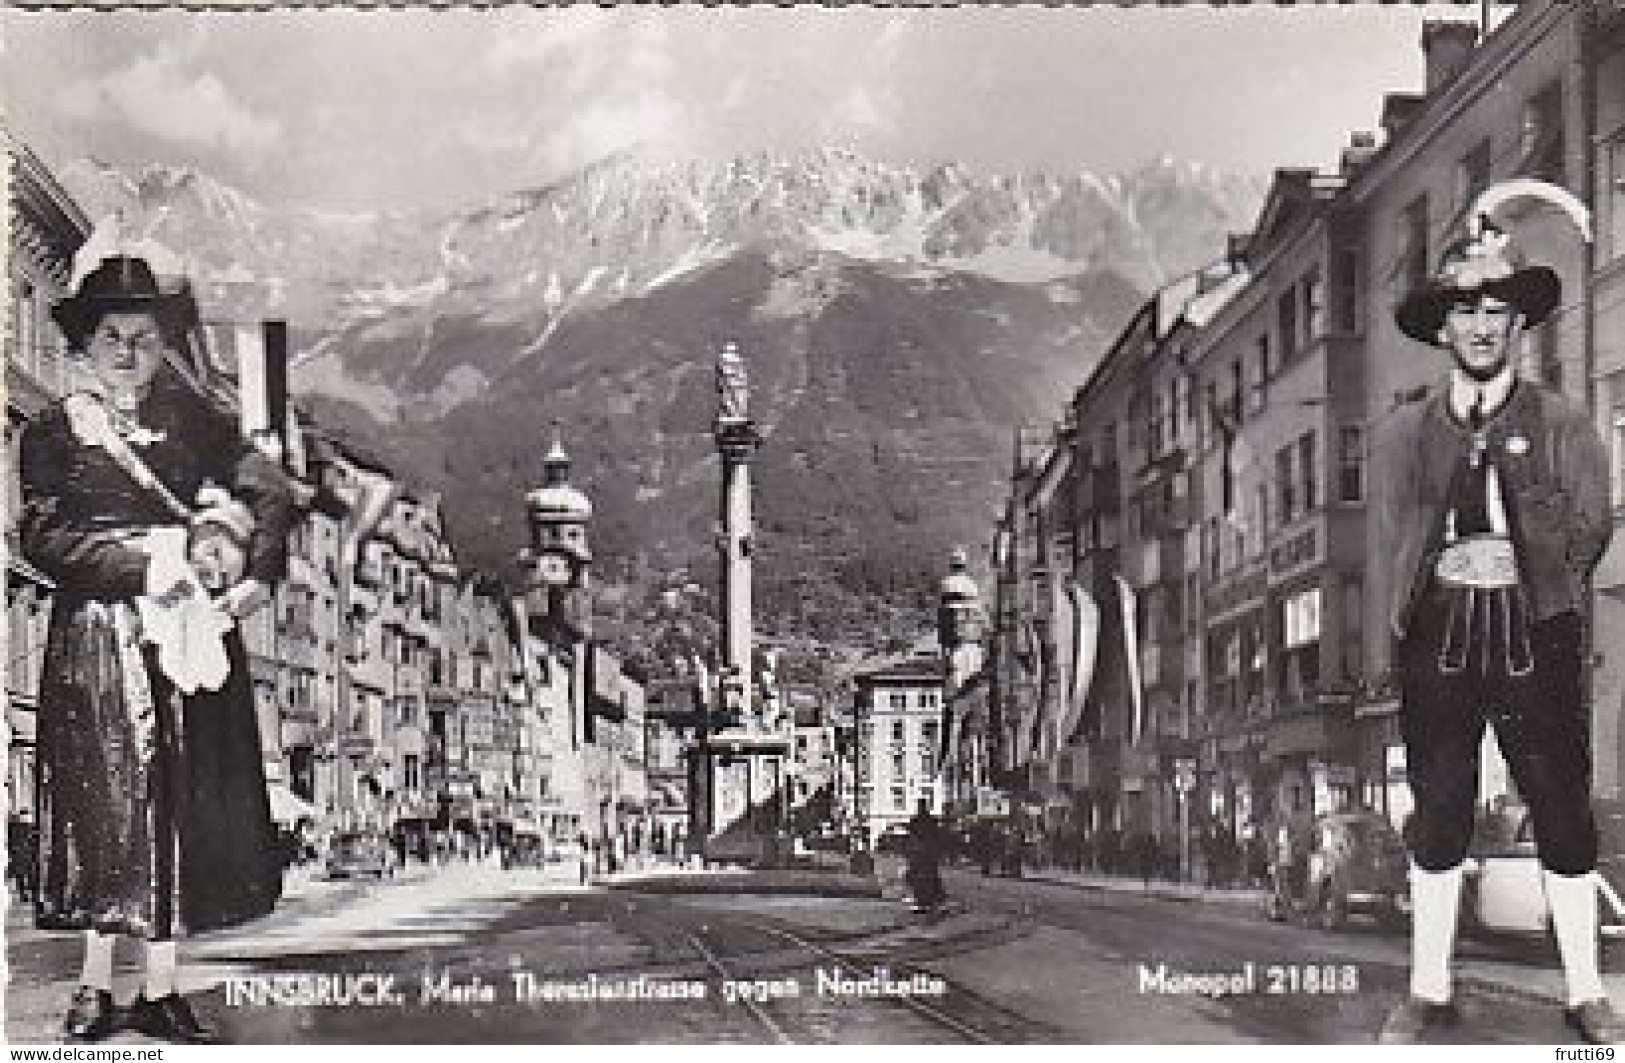 AK 209482 AUSTRIA - Maria Theresienstrasse Gegen Nordkette - Innsbruck